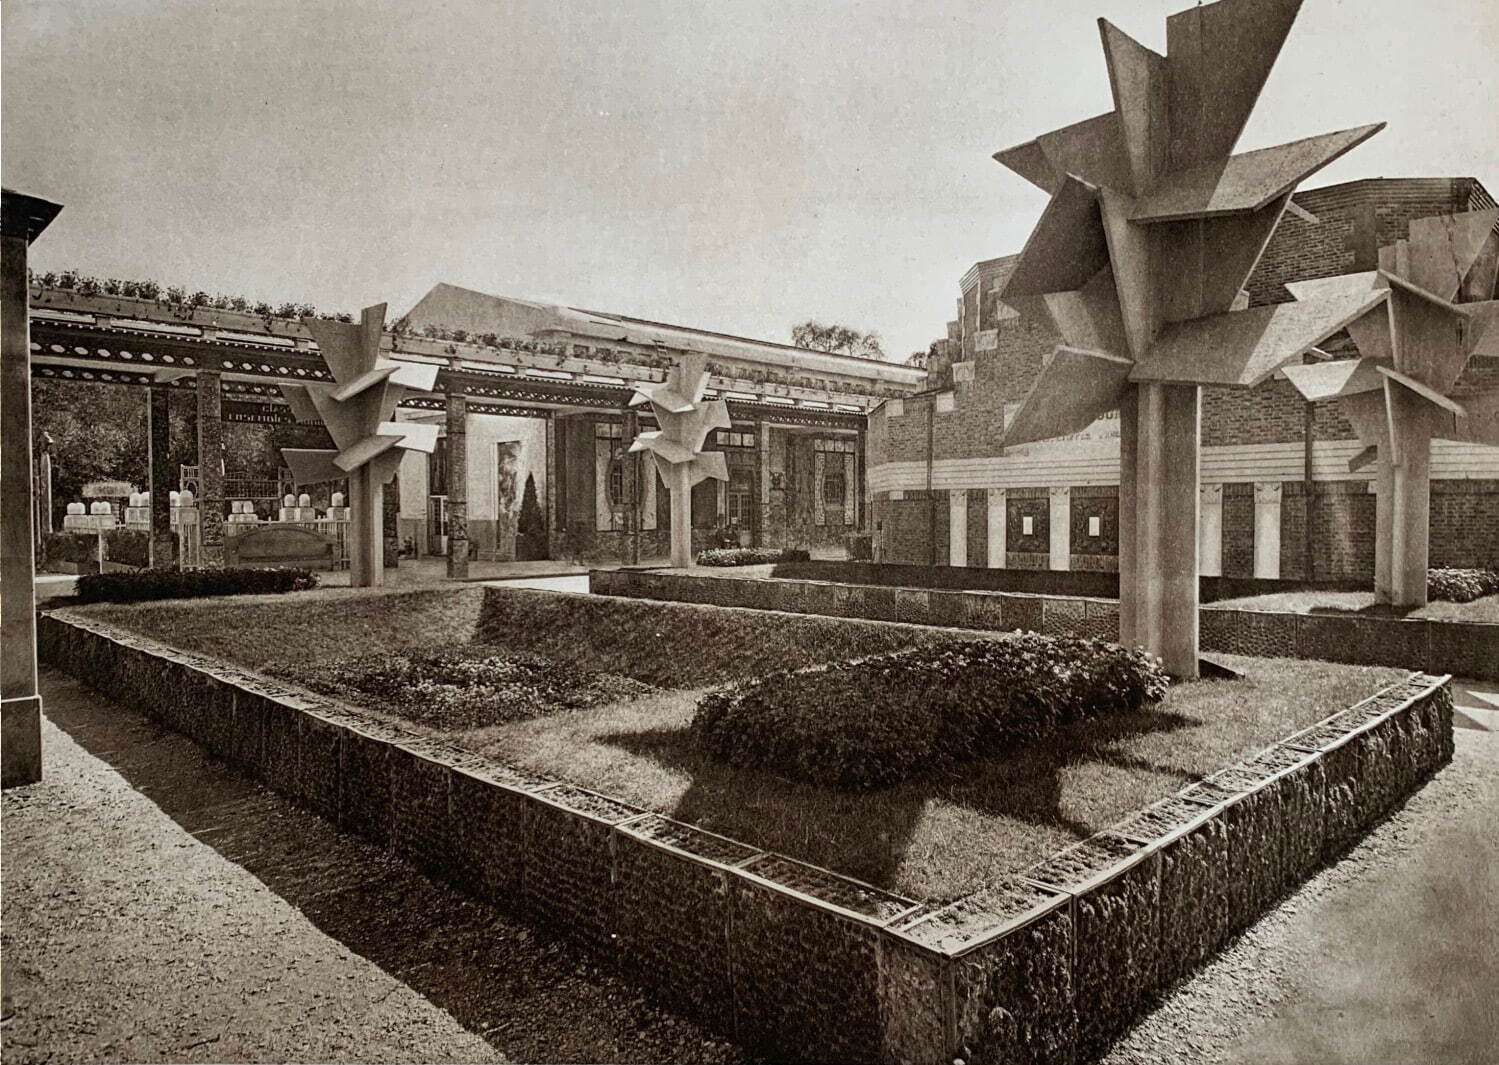 ロベール・マレ＝ステヴァンス 「庭園」 『1925年パリ装飾美術博覧会：建築と庭園』より
1925年 東京都庭園美術館蔵